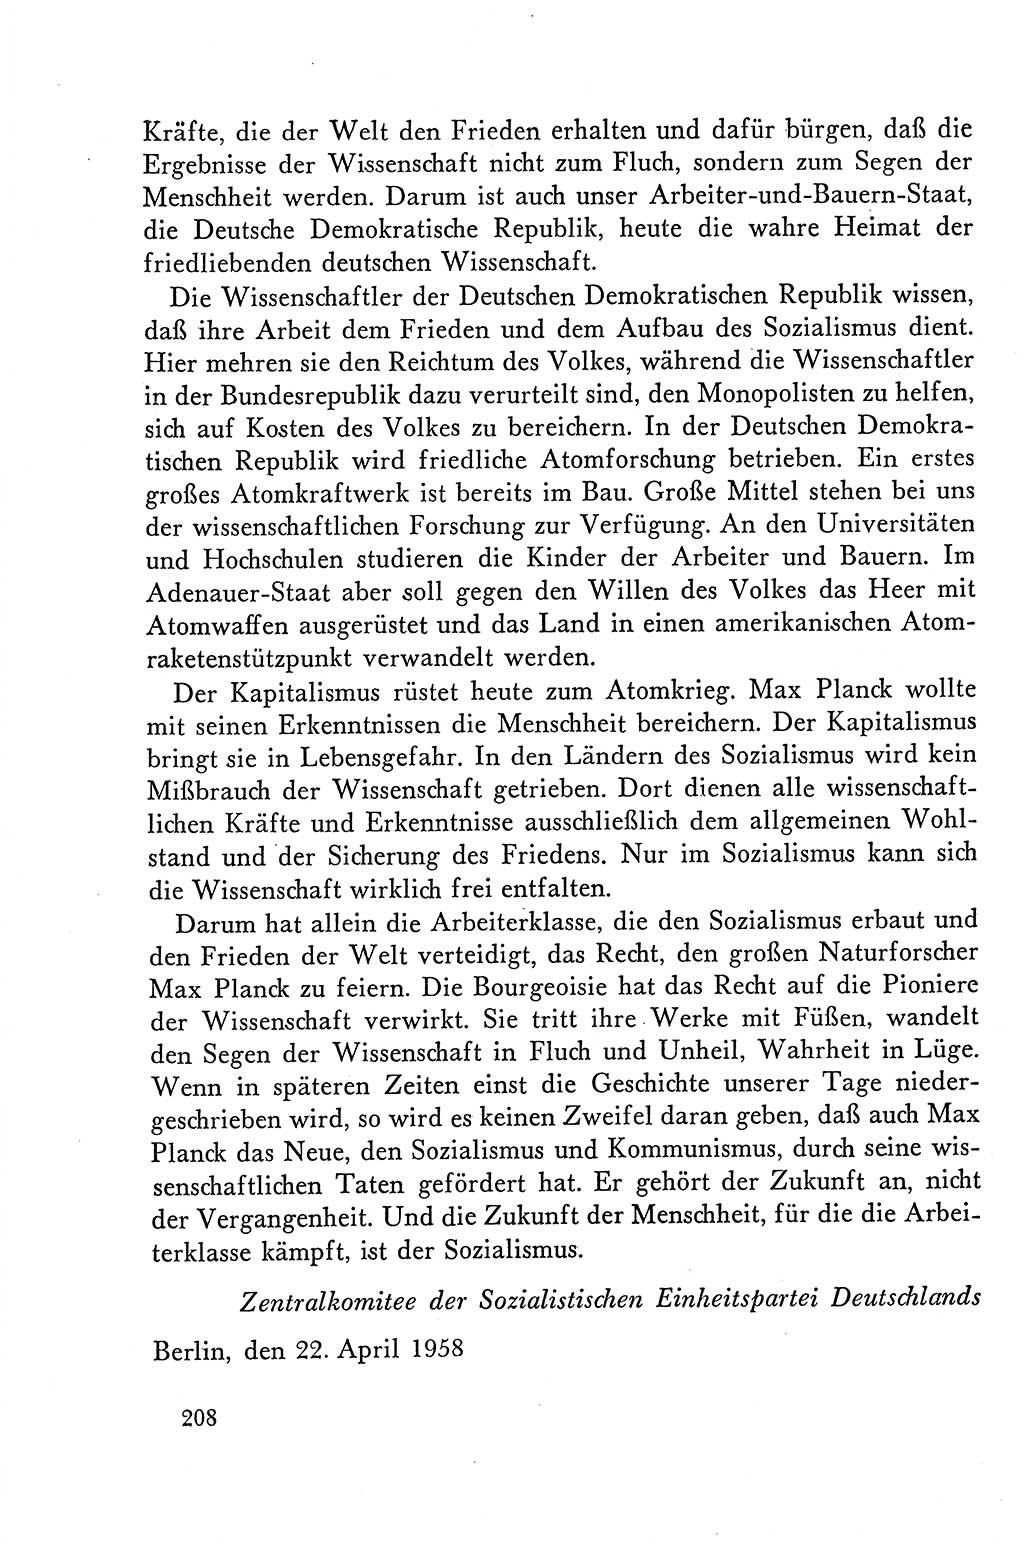 Dokumente der Sozialistischen Einheitspartei Deutschlands (SED) [Deutsche Demokratische Republik (DDR)] 1958-1959, Seite 208 (Dok. SED DDR 1958-1959, S. 208)